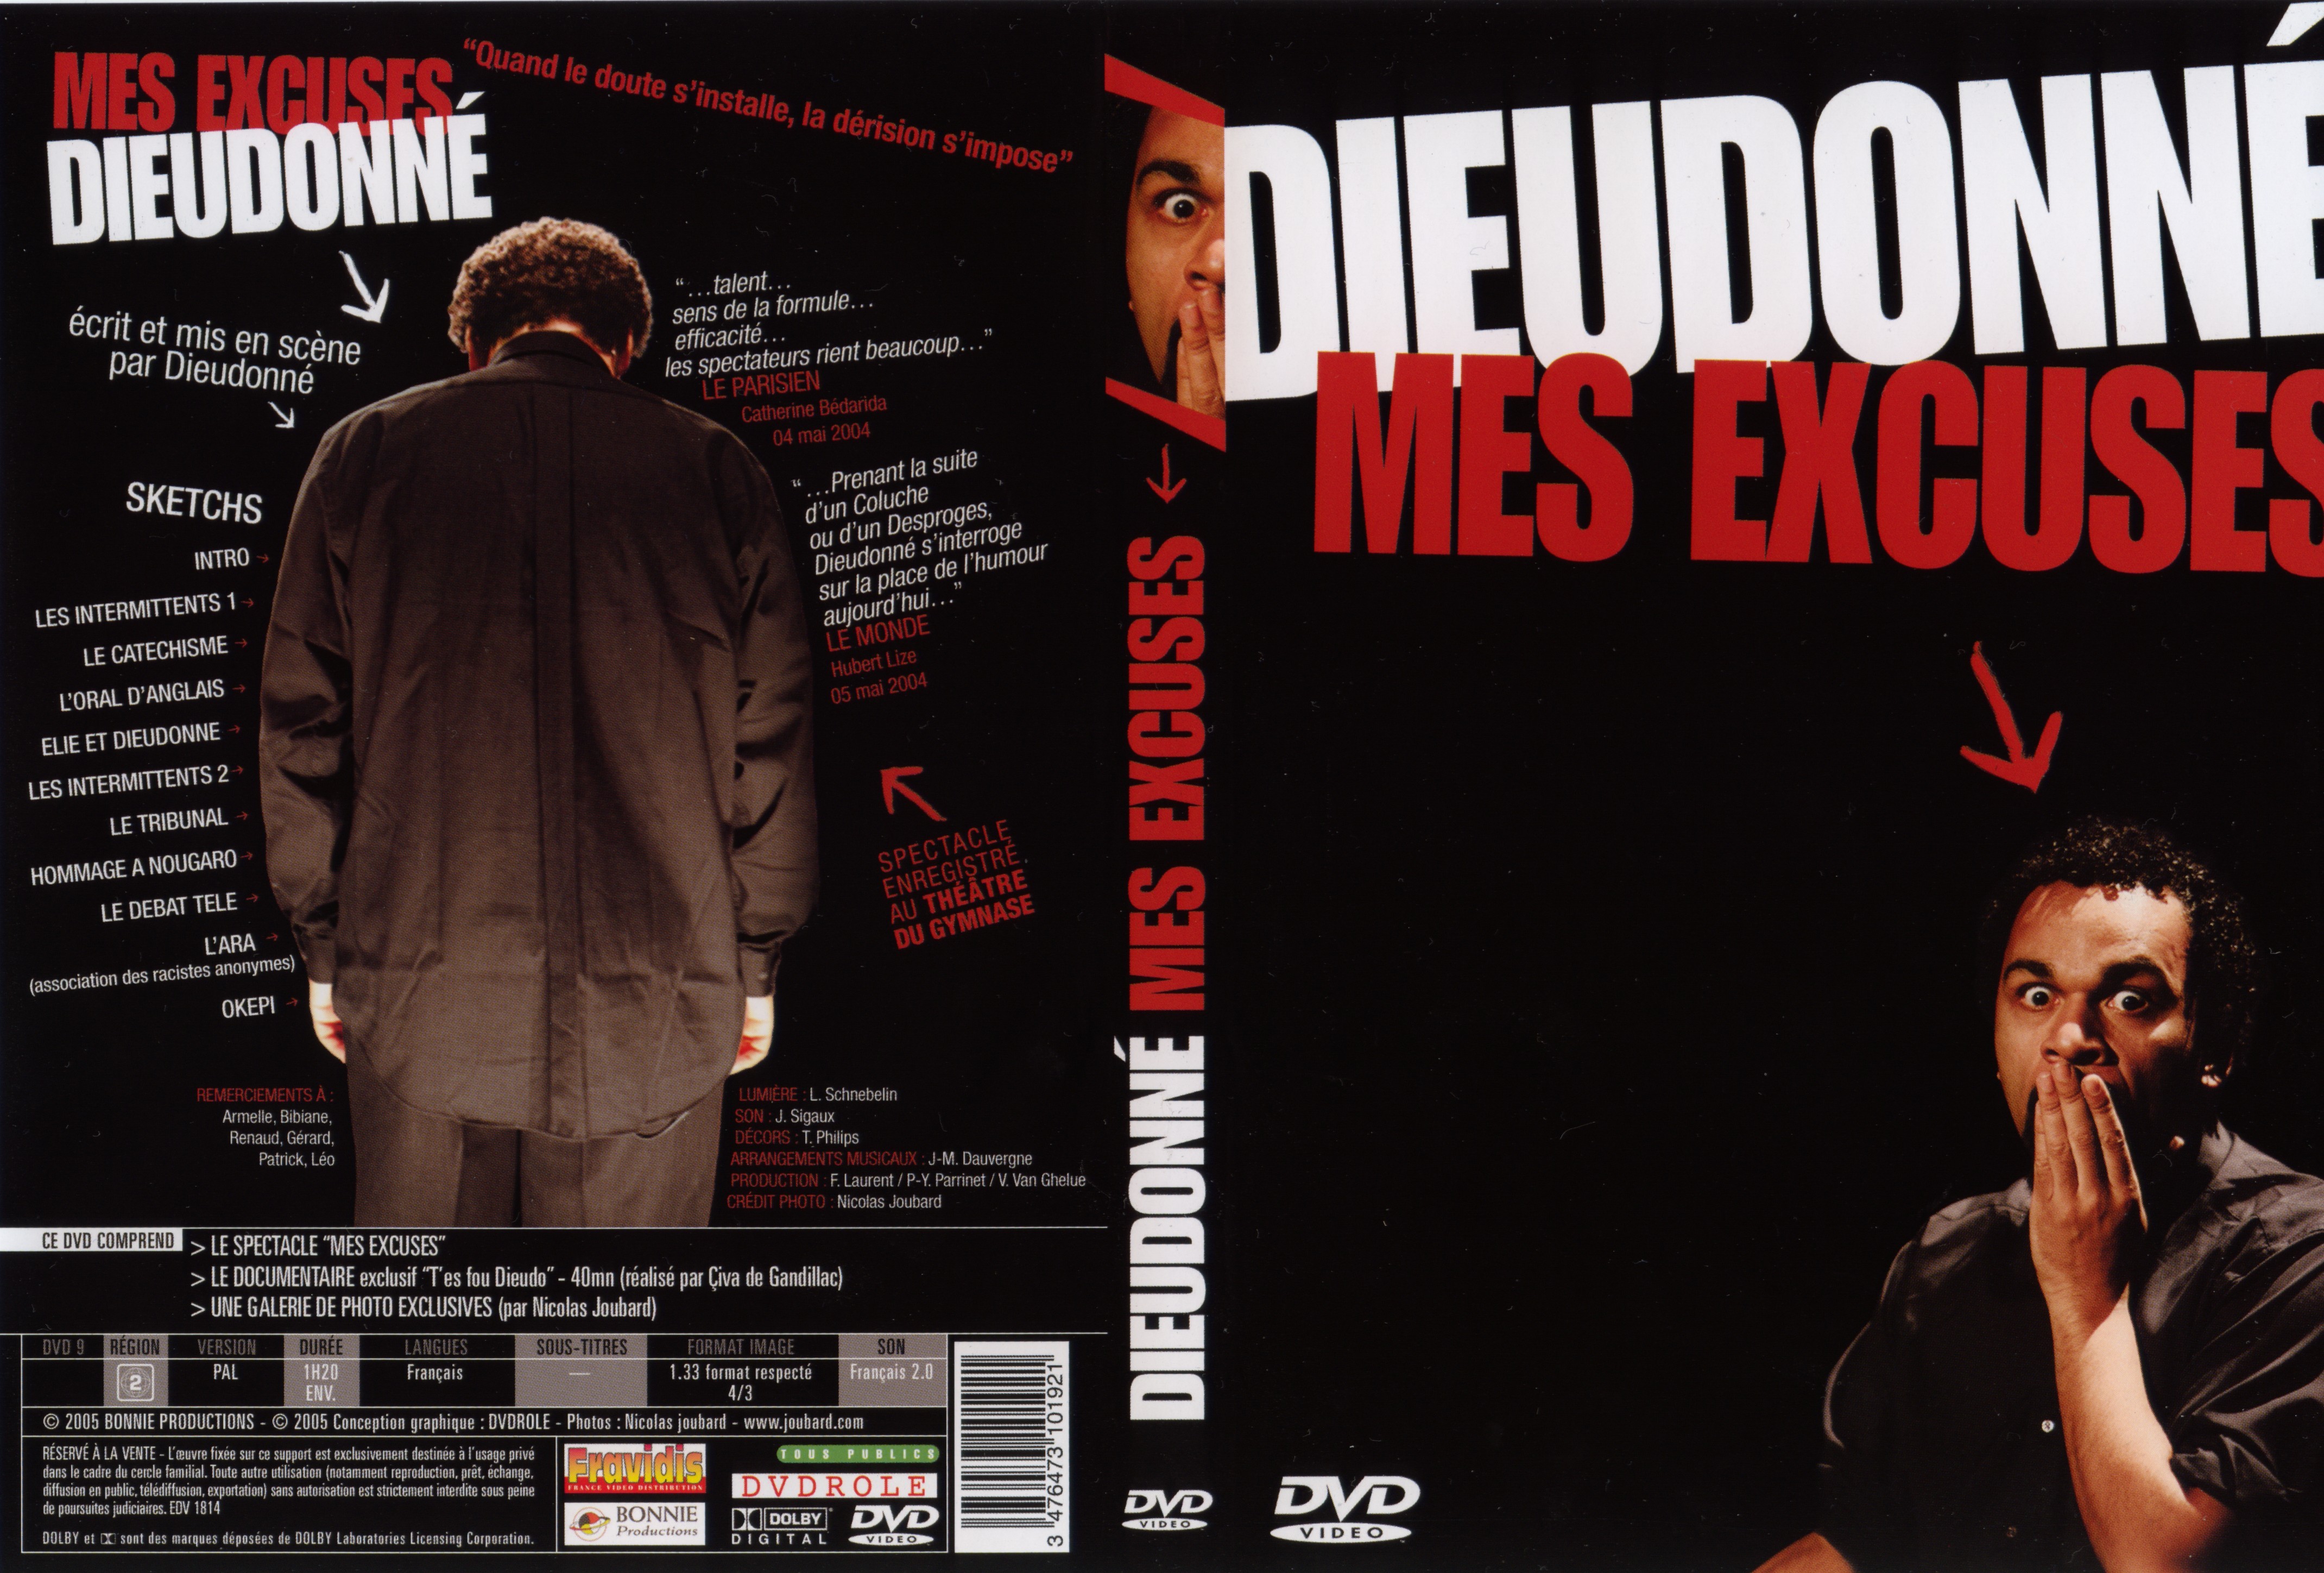 Jaquette DVD Dieudonn - Mes excuses